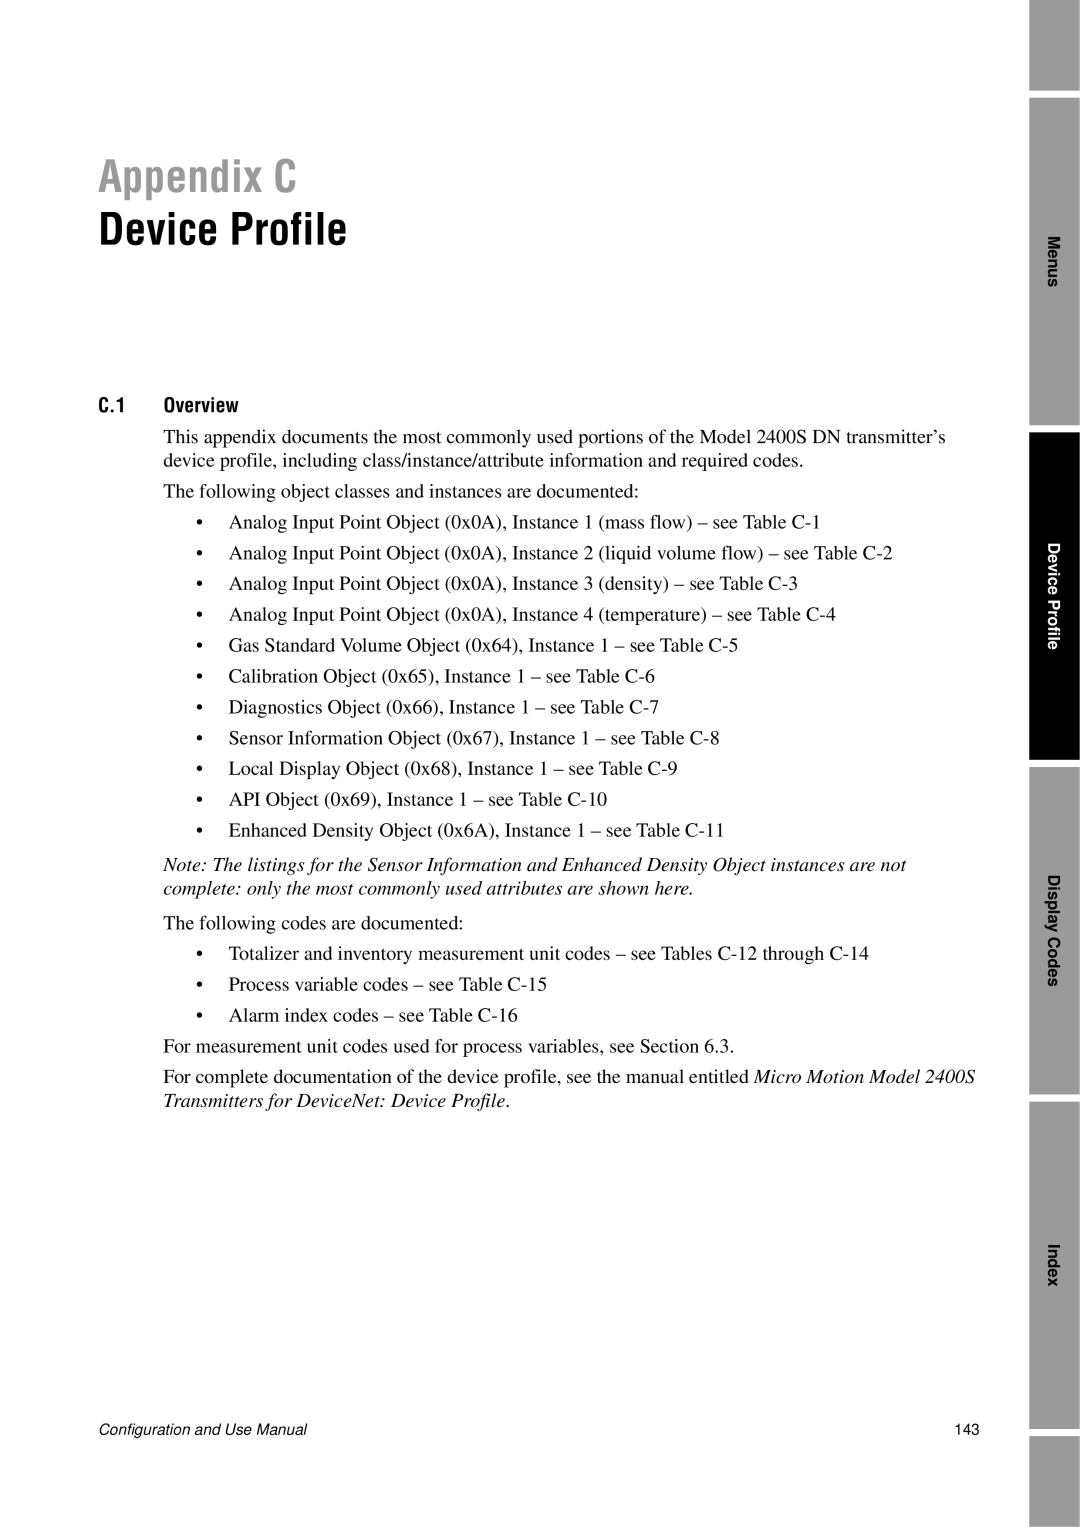 Emerson Process Management 2400S manual Appendix C, Device Profile, C.1 Overview 